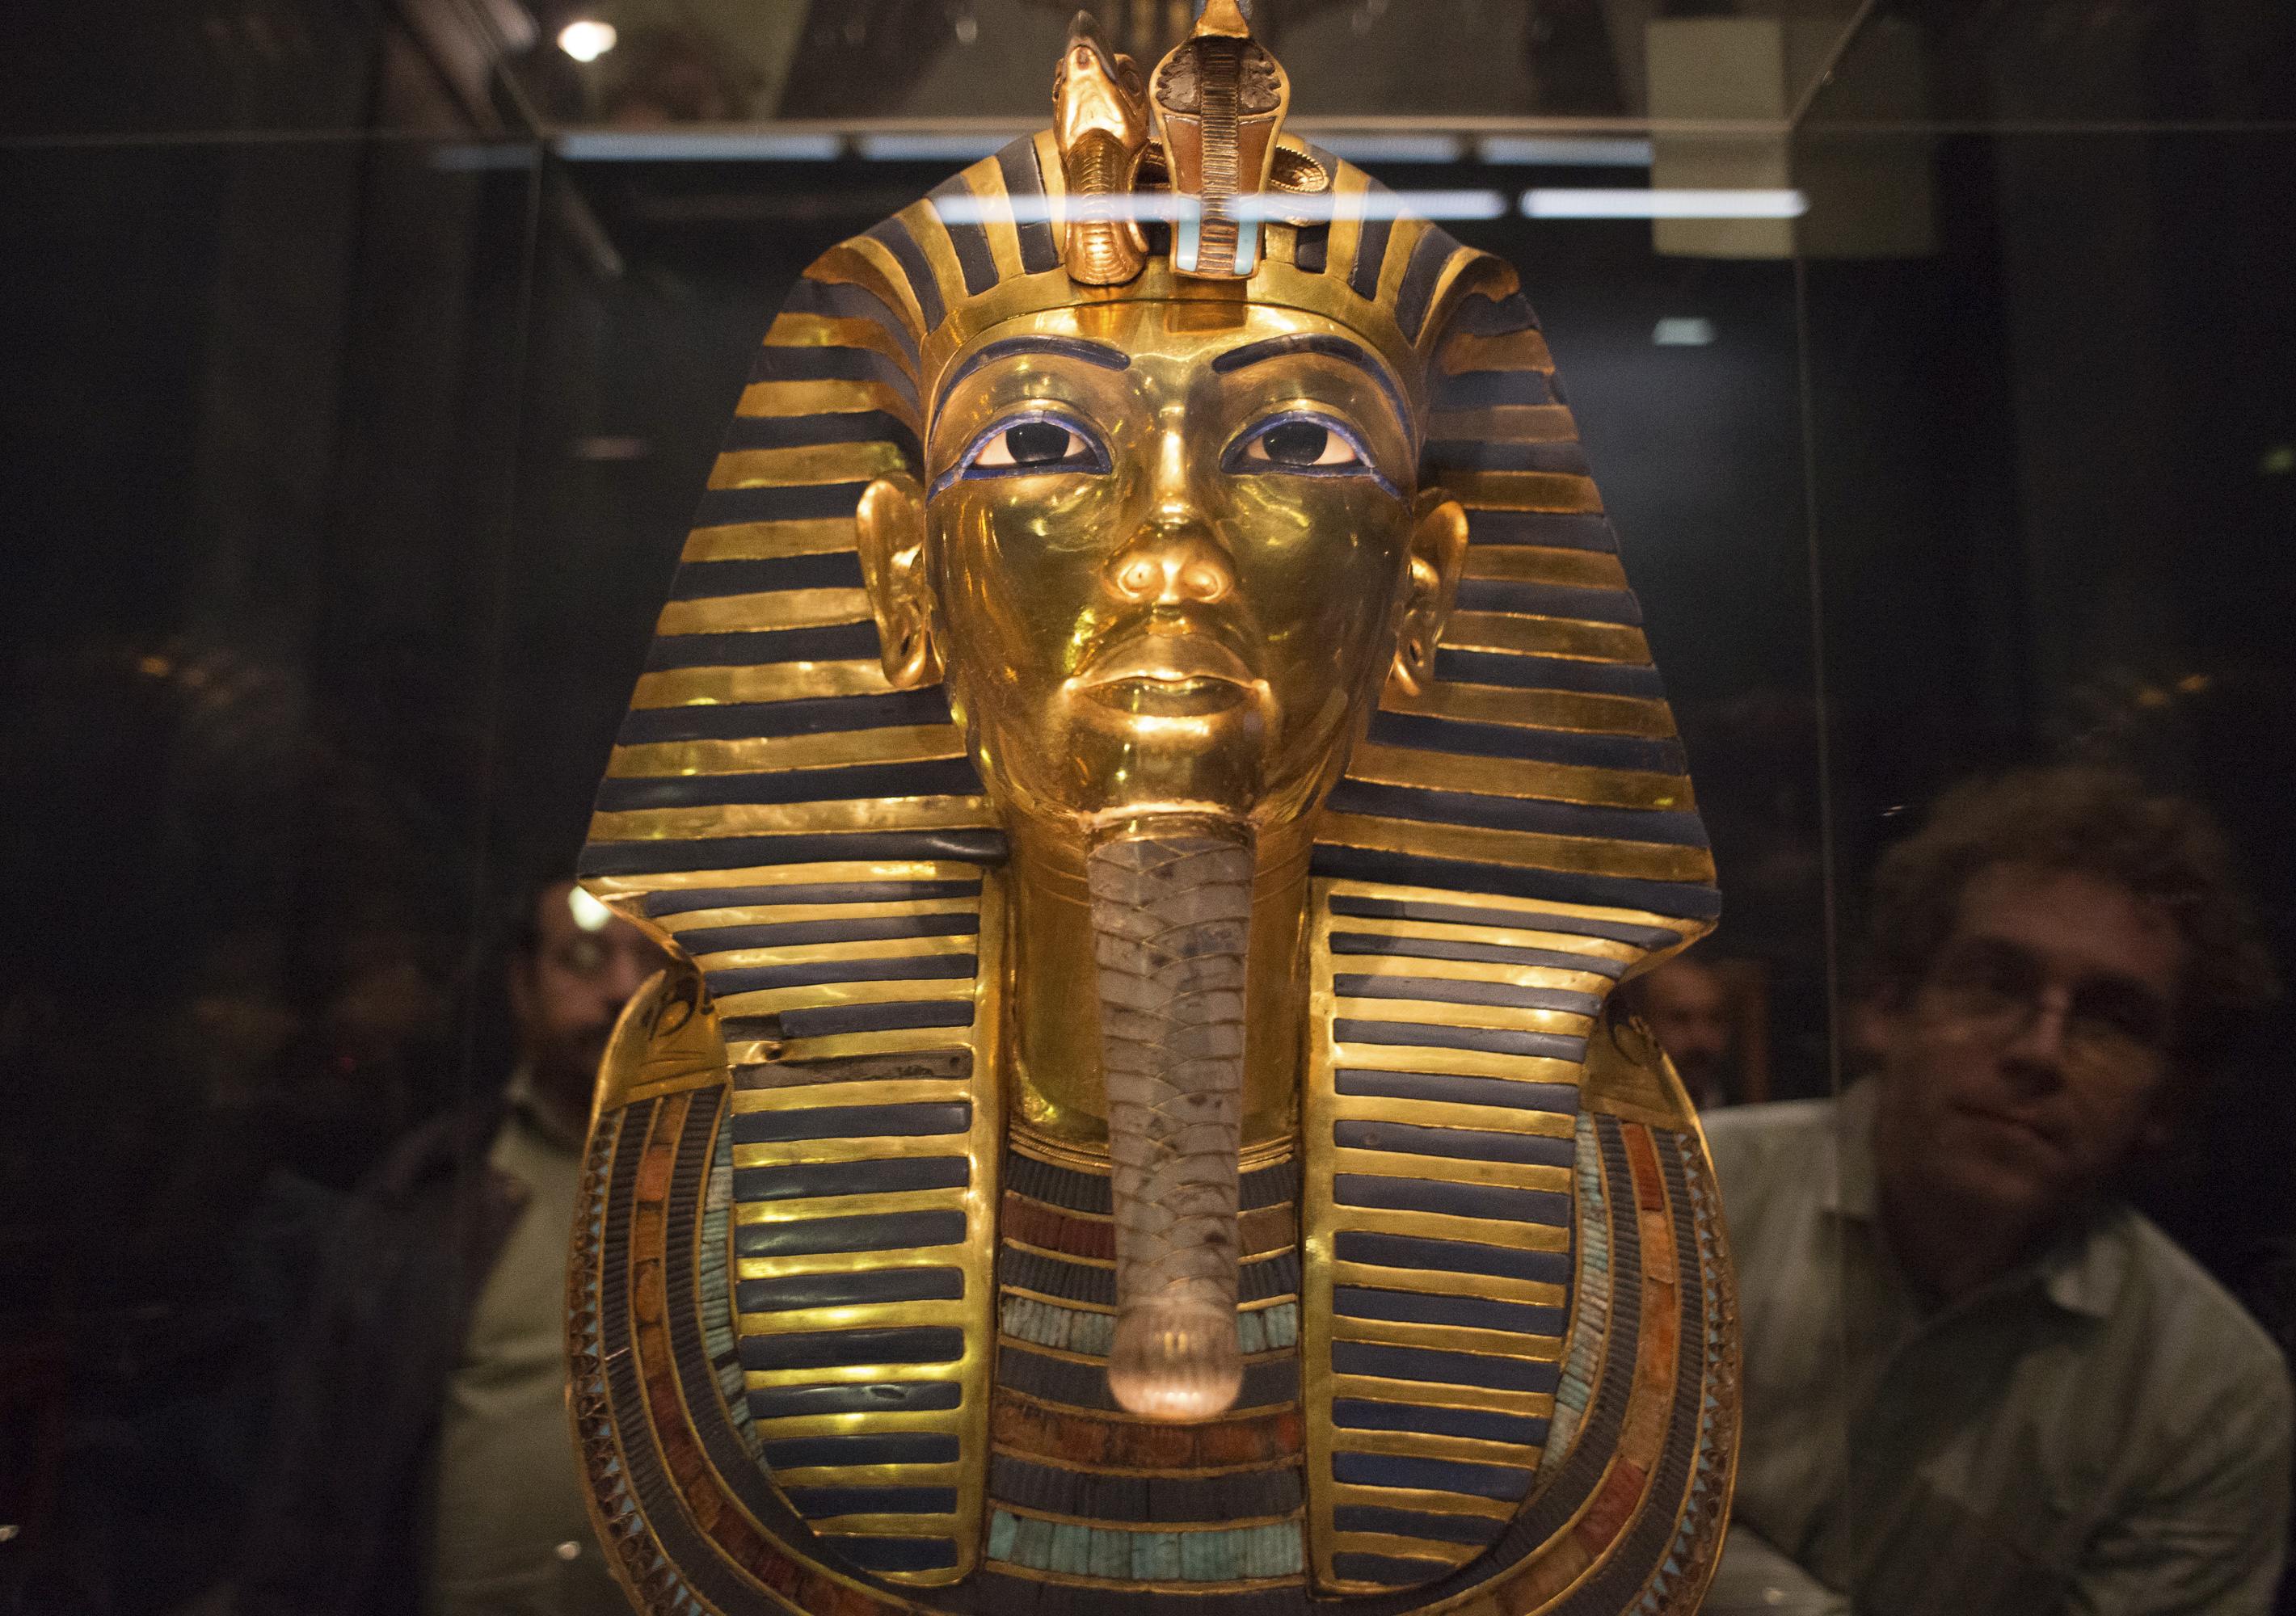 King Tut's golden mask back on display next week